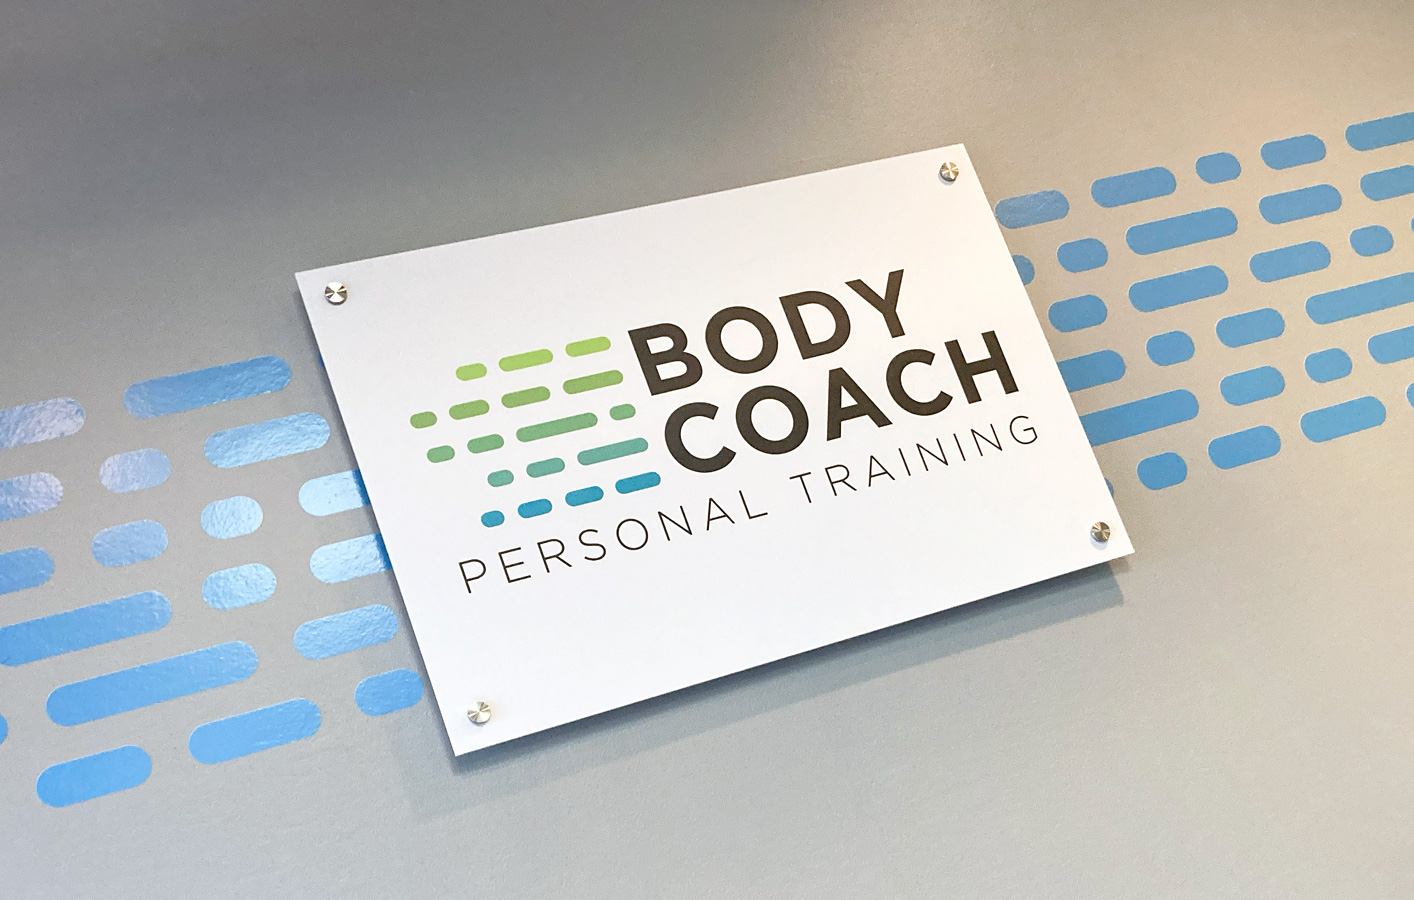 Body Coach Logo on Wall